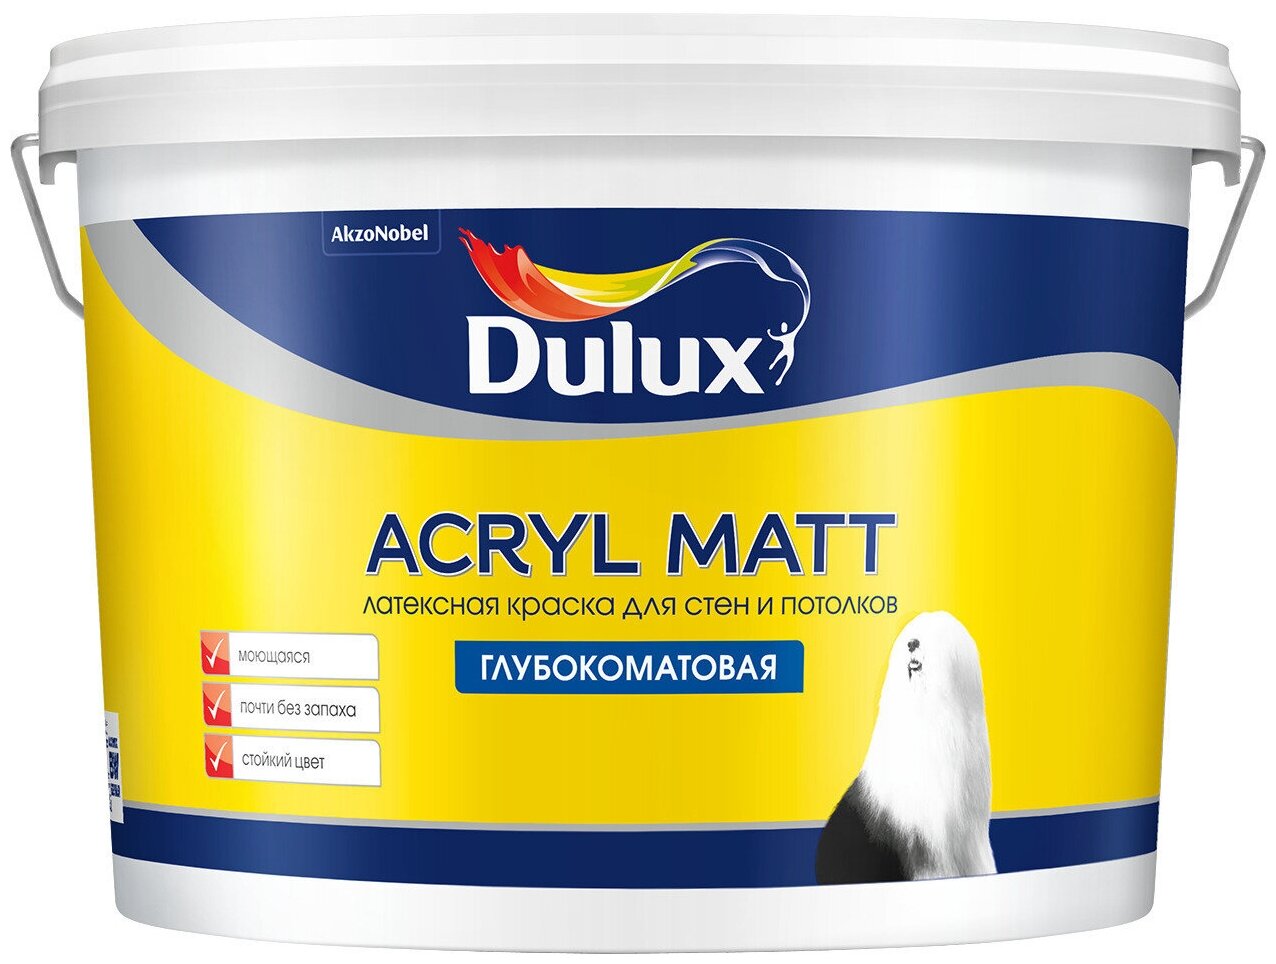 Dulux Acryl Matt 9, , 60RR 62/086 